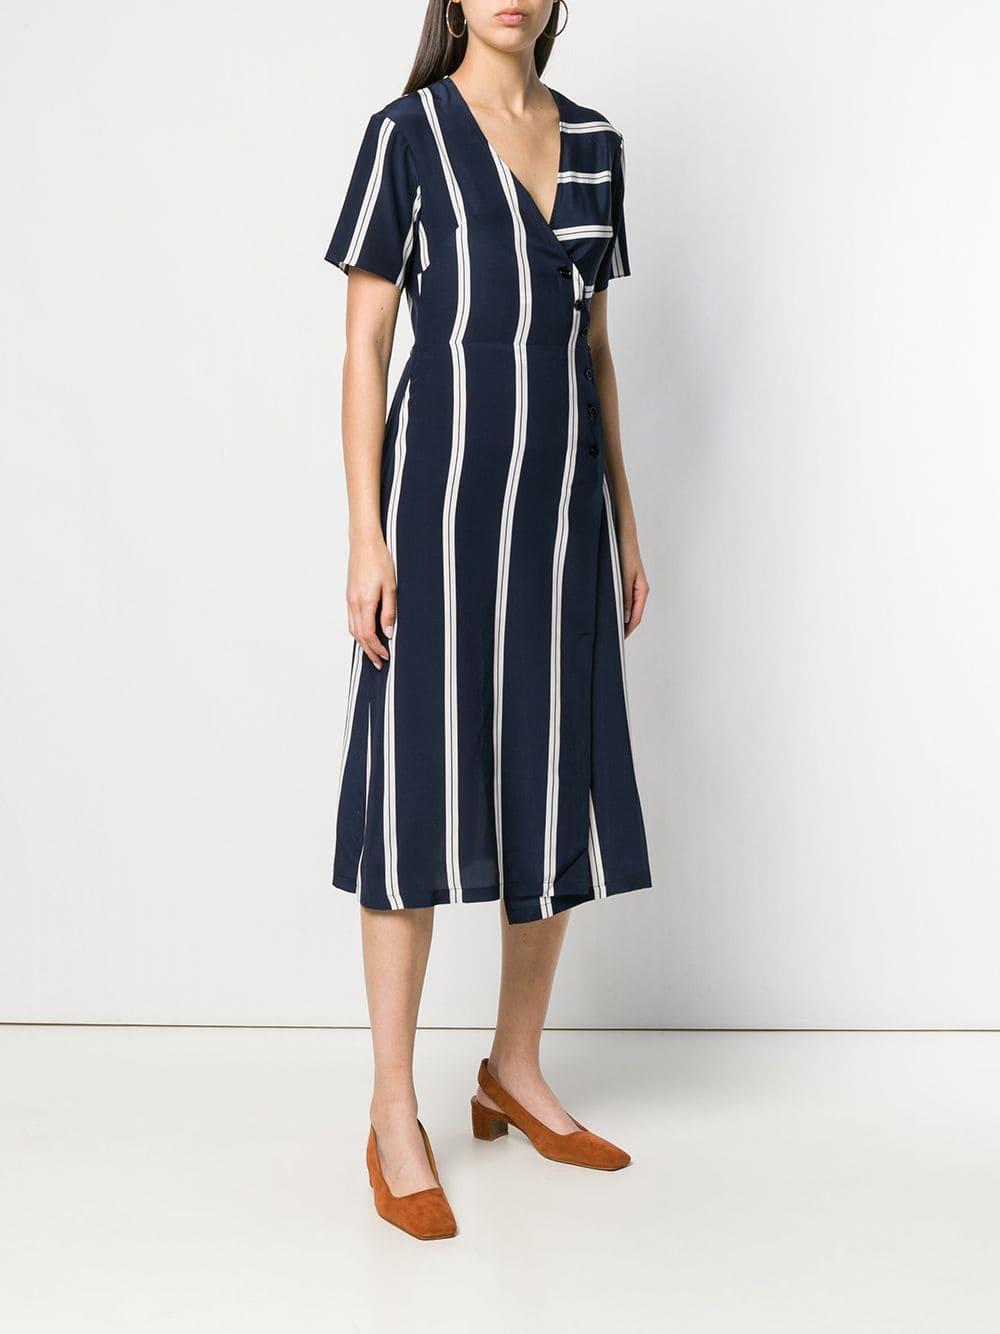 Être Cécile Silk Striped Wrap Front Dress in Blue - Lyst